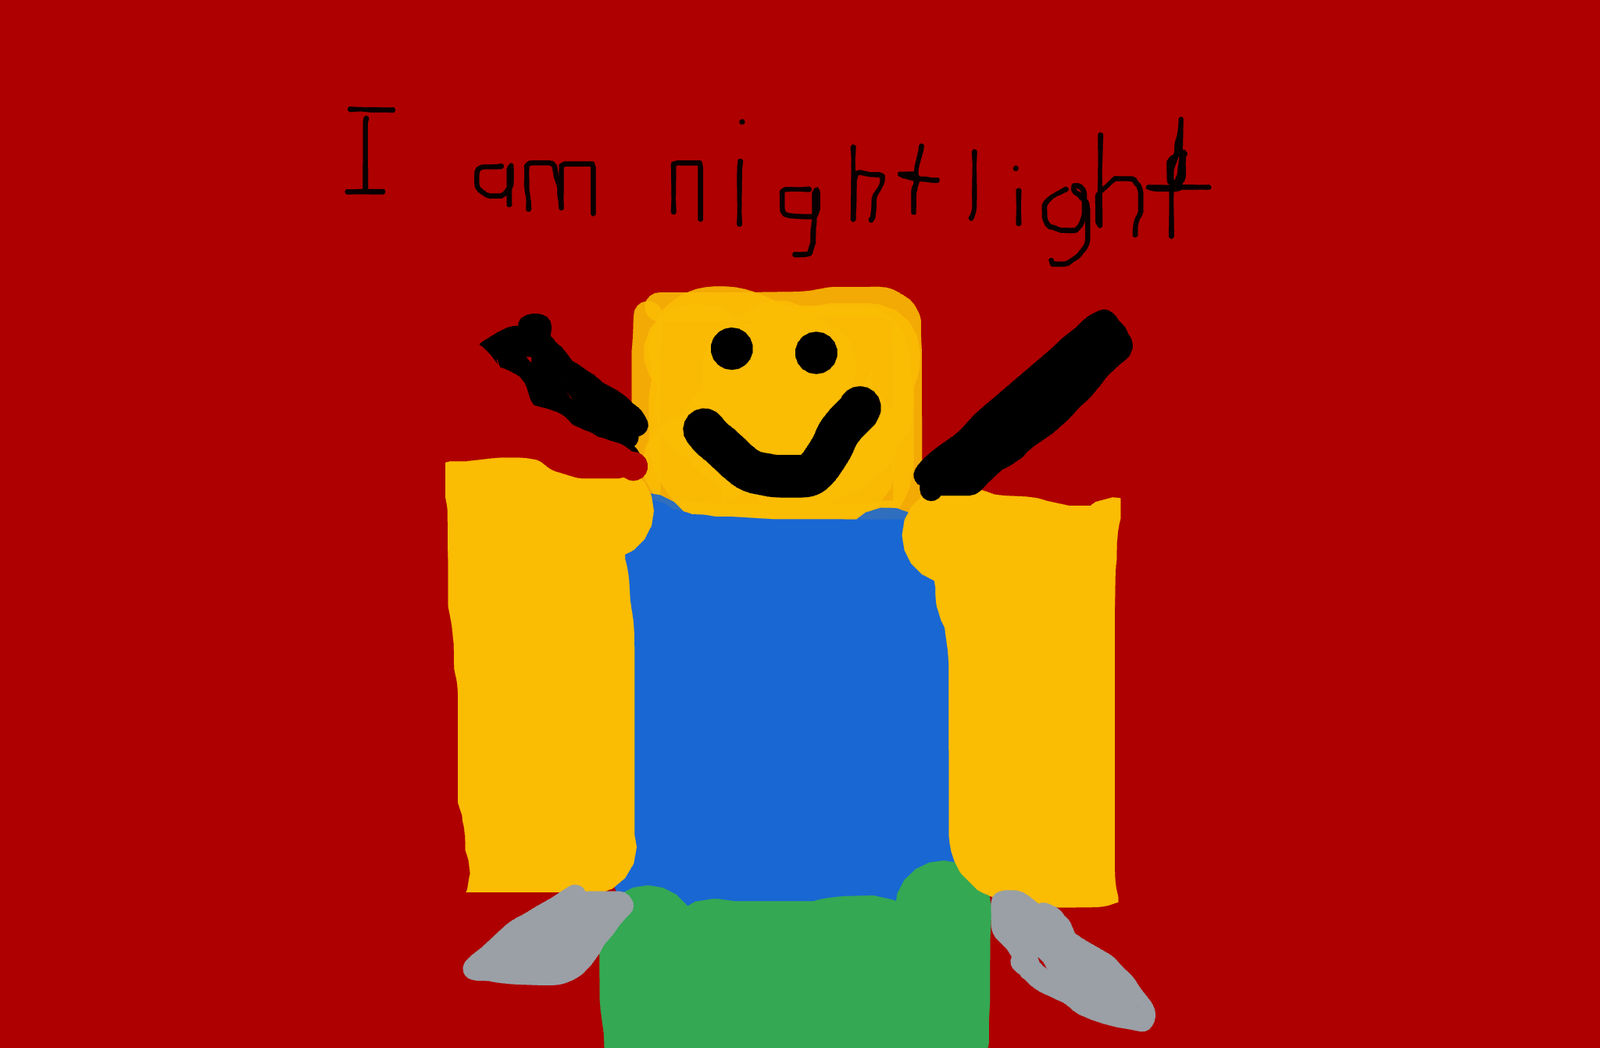 Nightlight